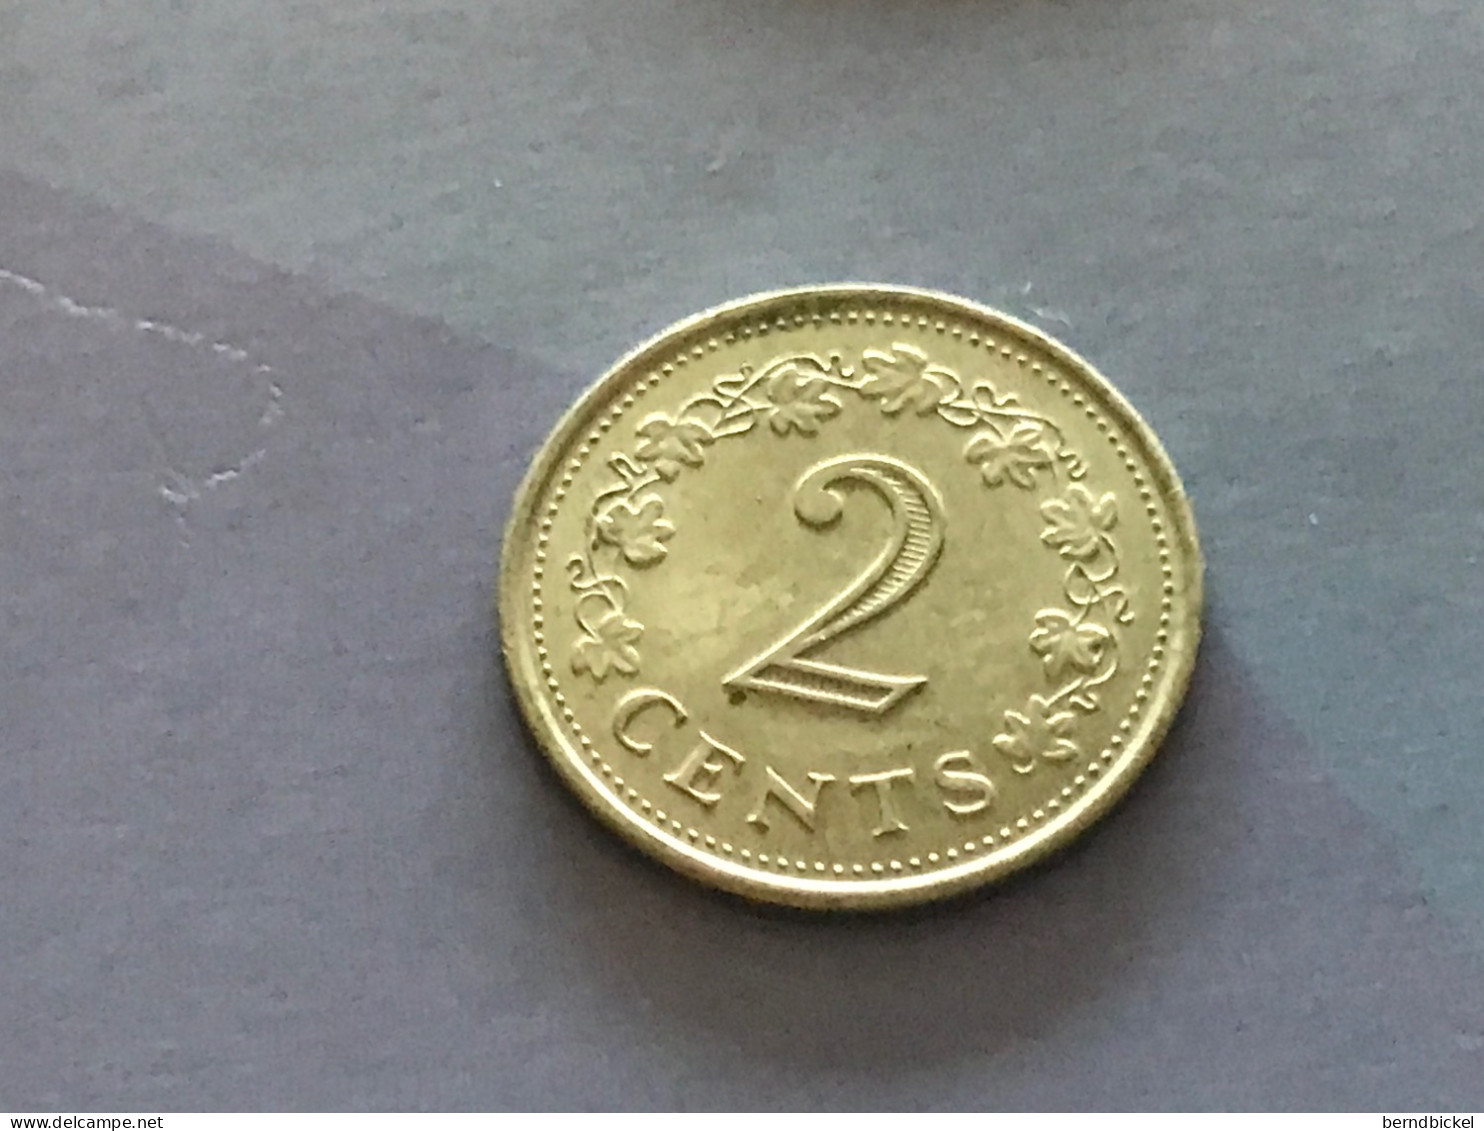 Münze Münzen Umlaufmünze Malta 2 Cent 1972 - Malte